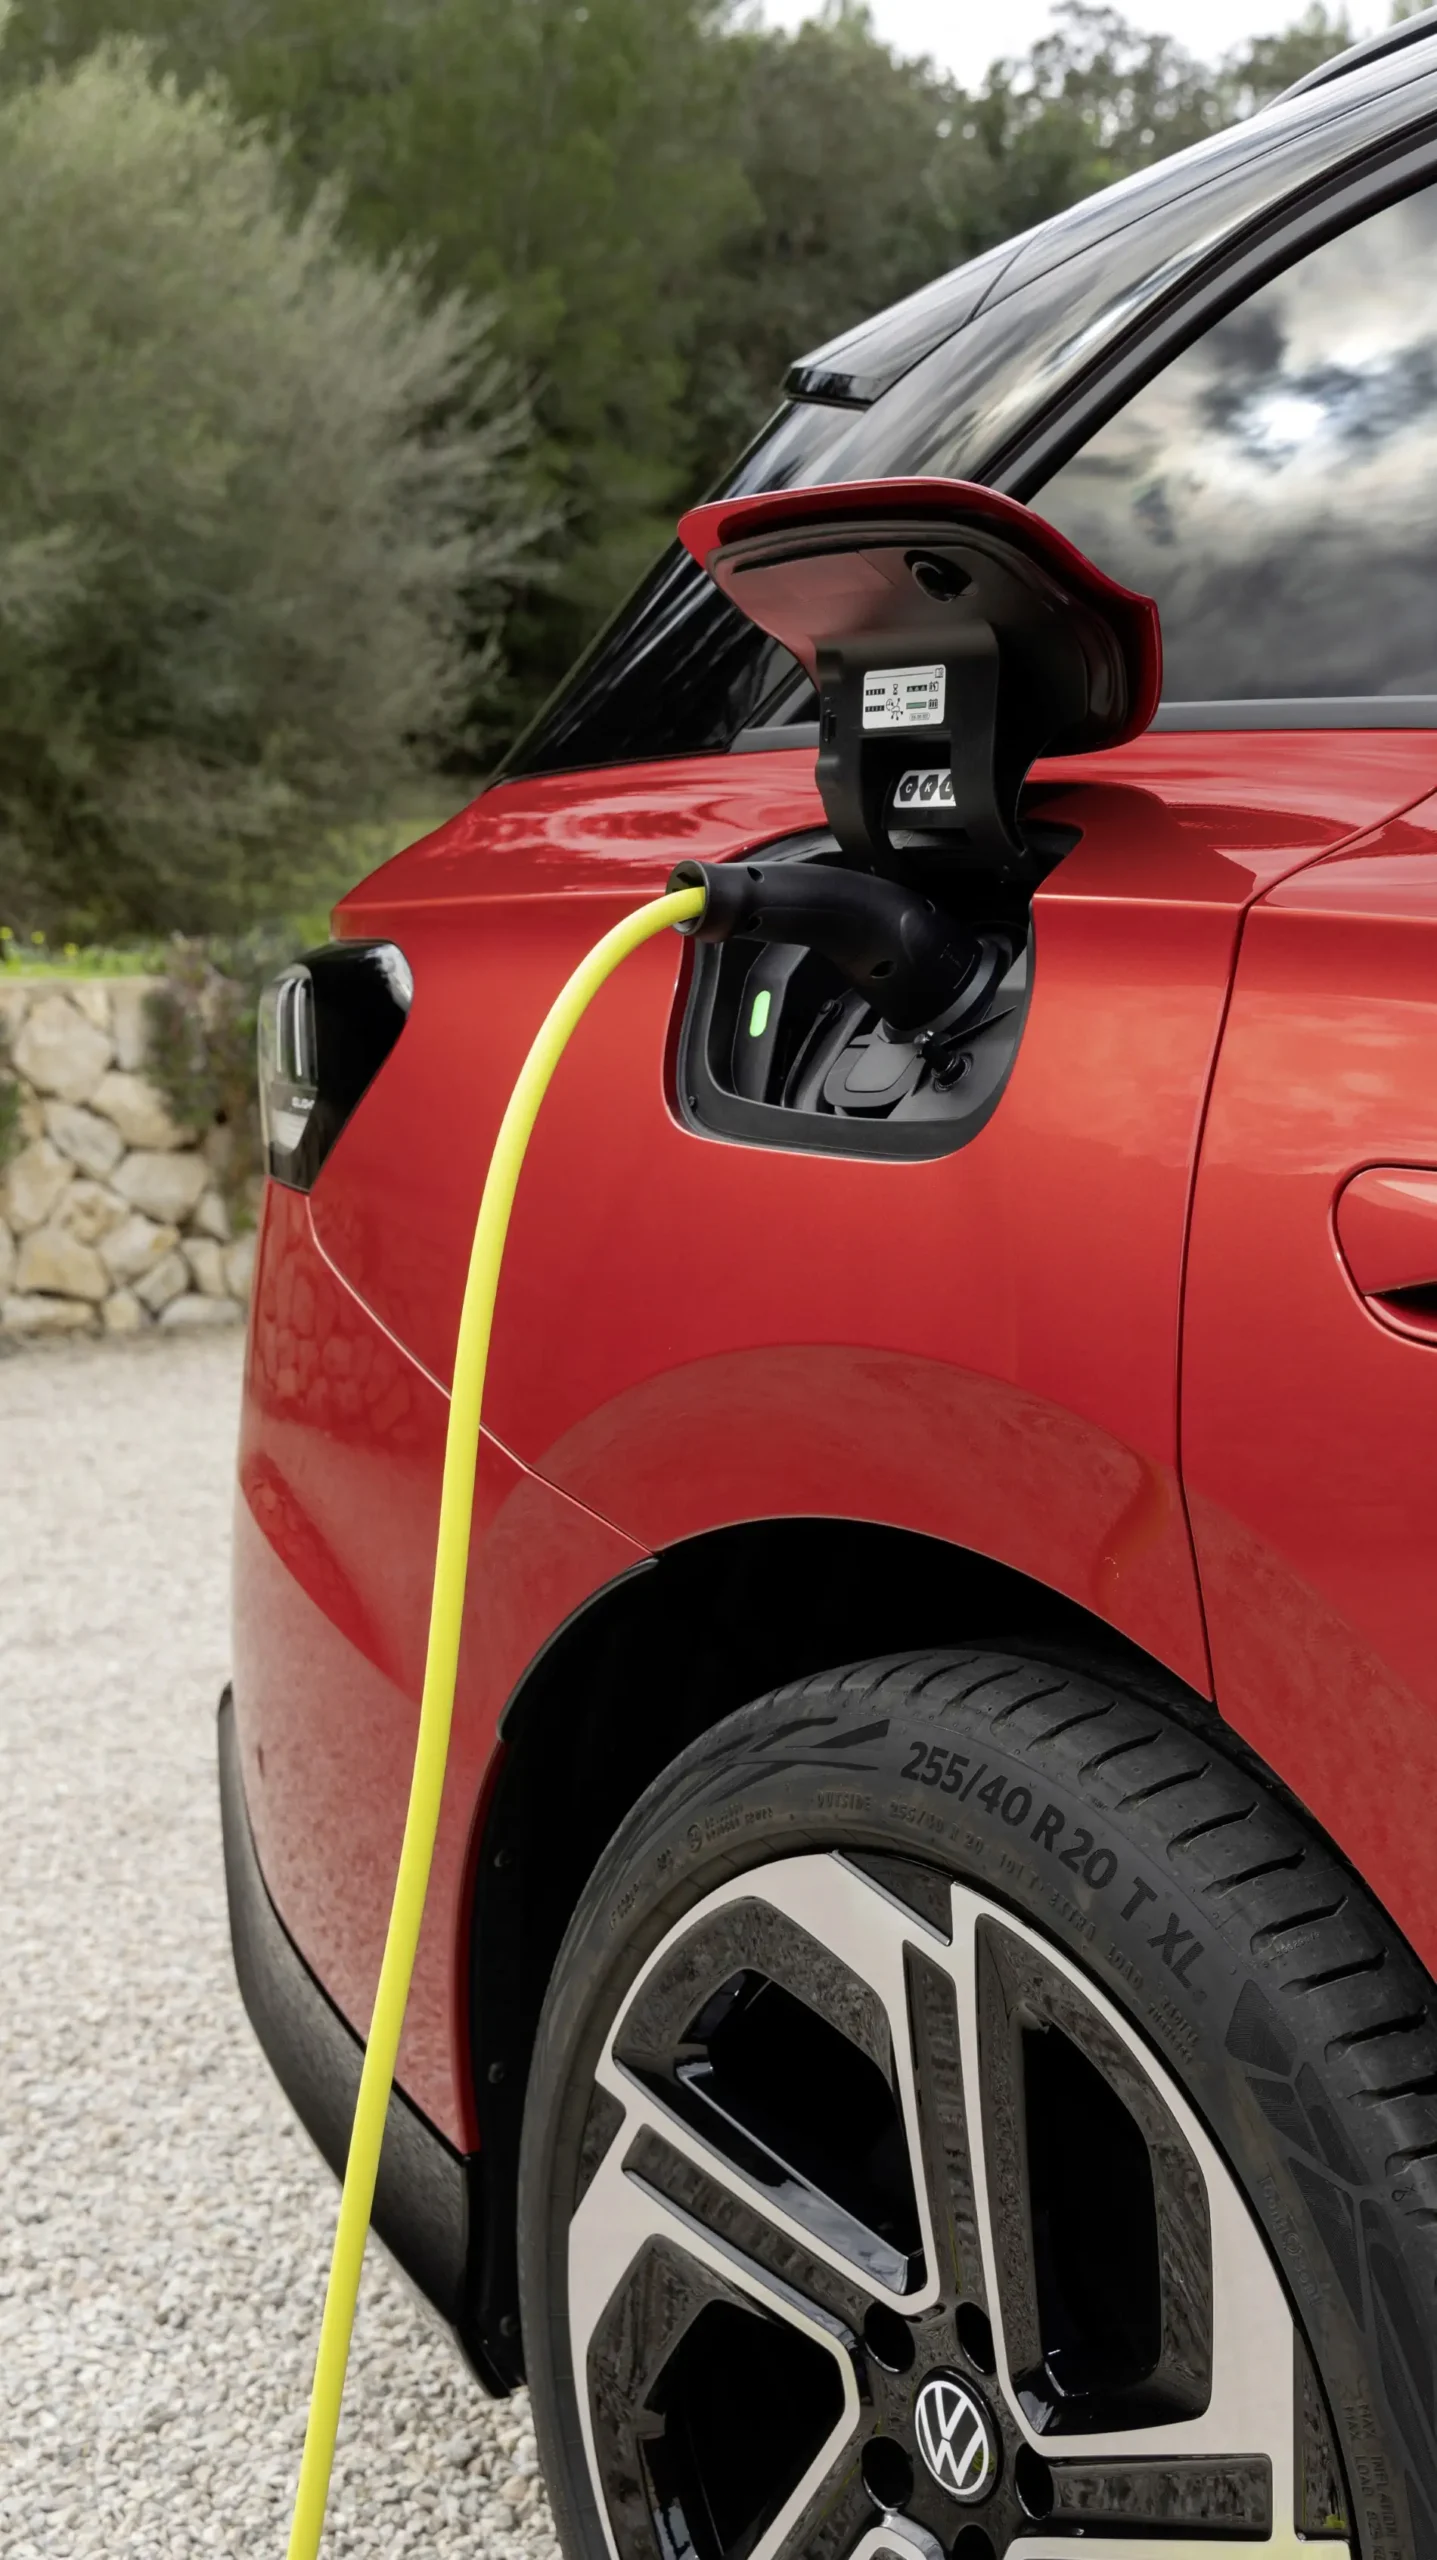 Volkswagen annonce une voiture électrique abordable pour l'Europe, avec un objectif de prix de 20 000 euros